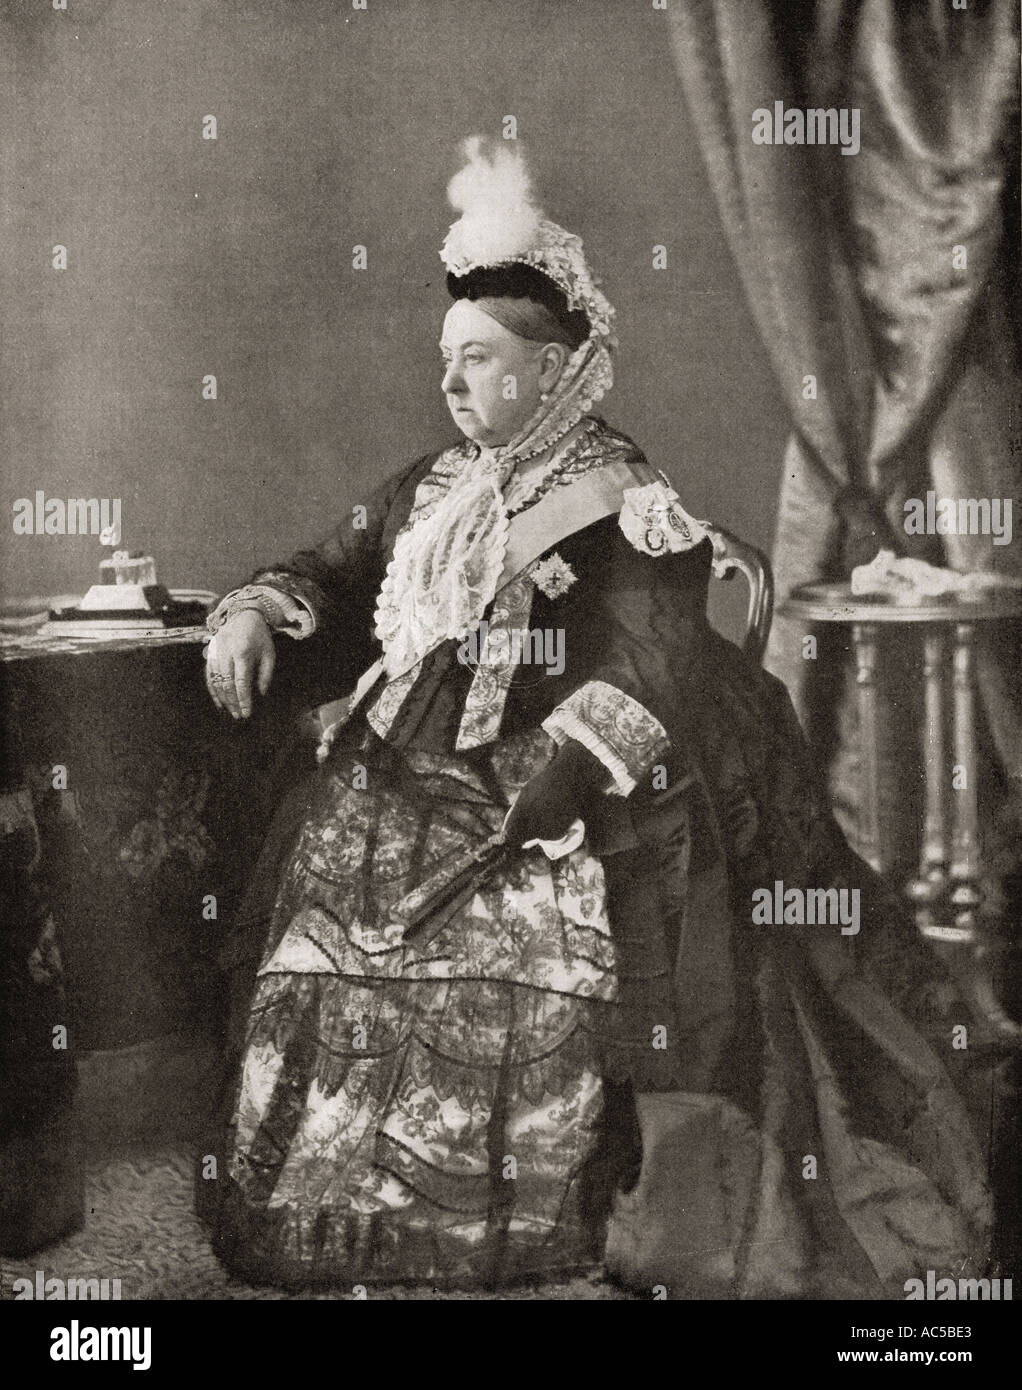 La reina Victoria, 1819 - 1901, visto aquí en el vestido usado por su servicio en el jubileo de 1887. Foto de stock